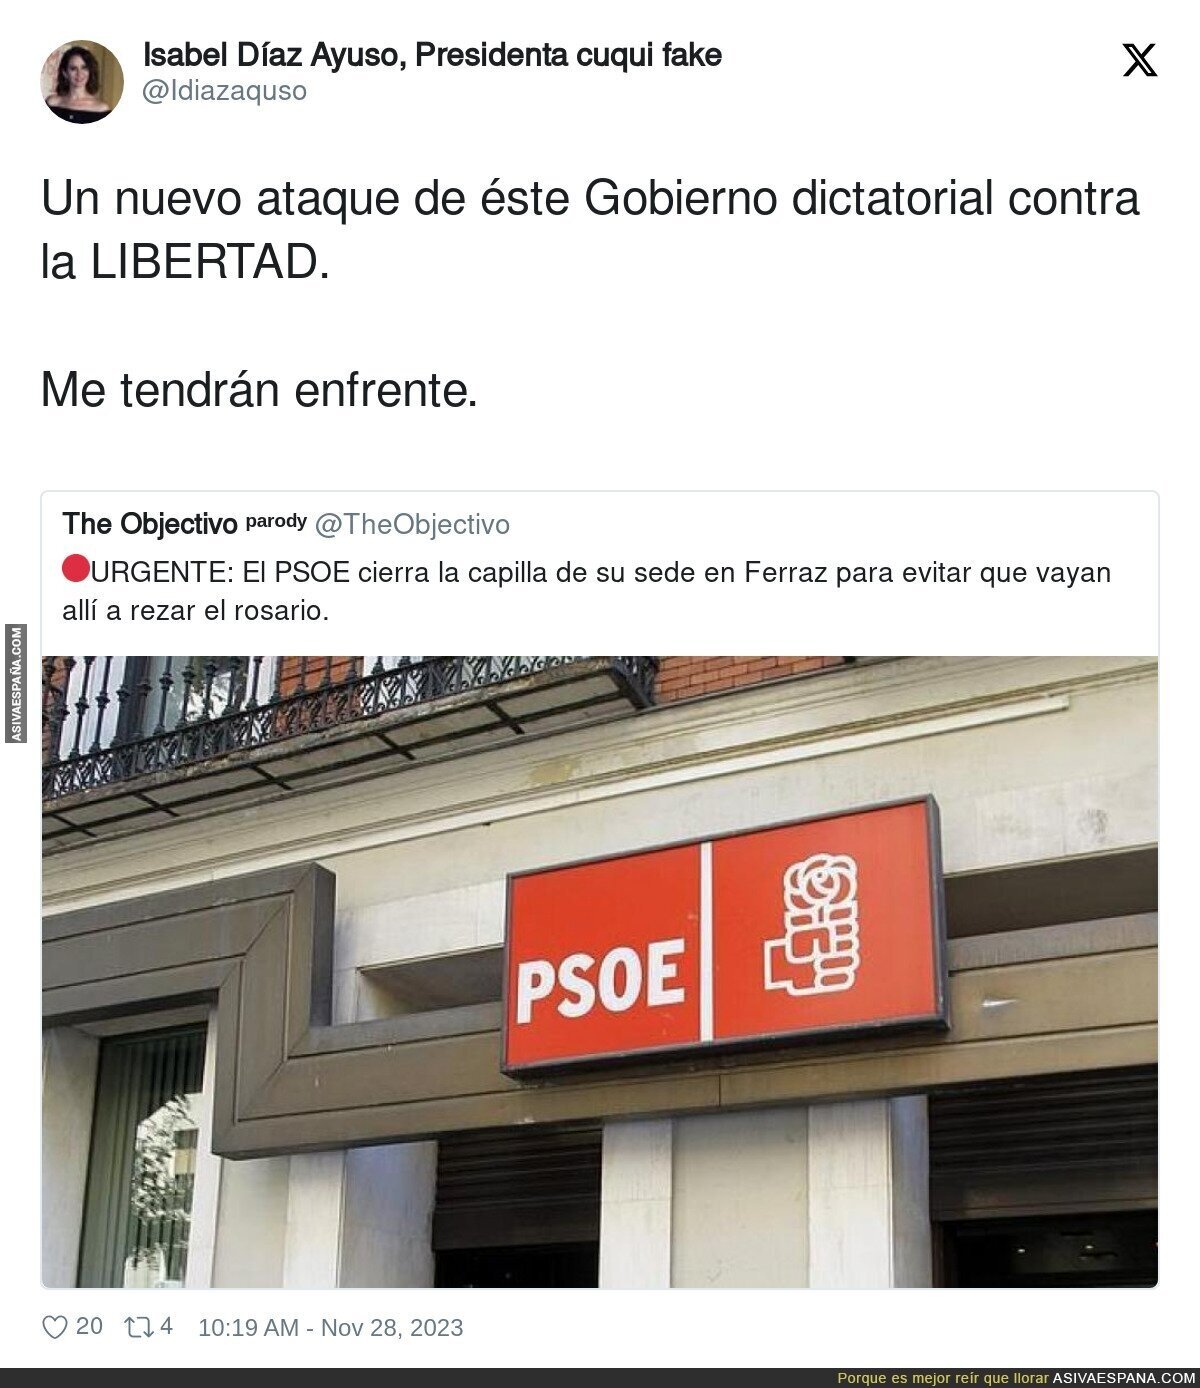 El PSOE luchando contra la gente que va a rezar el Rosario a su sede